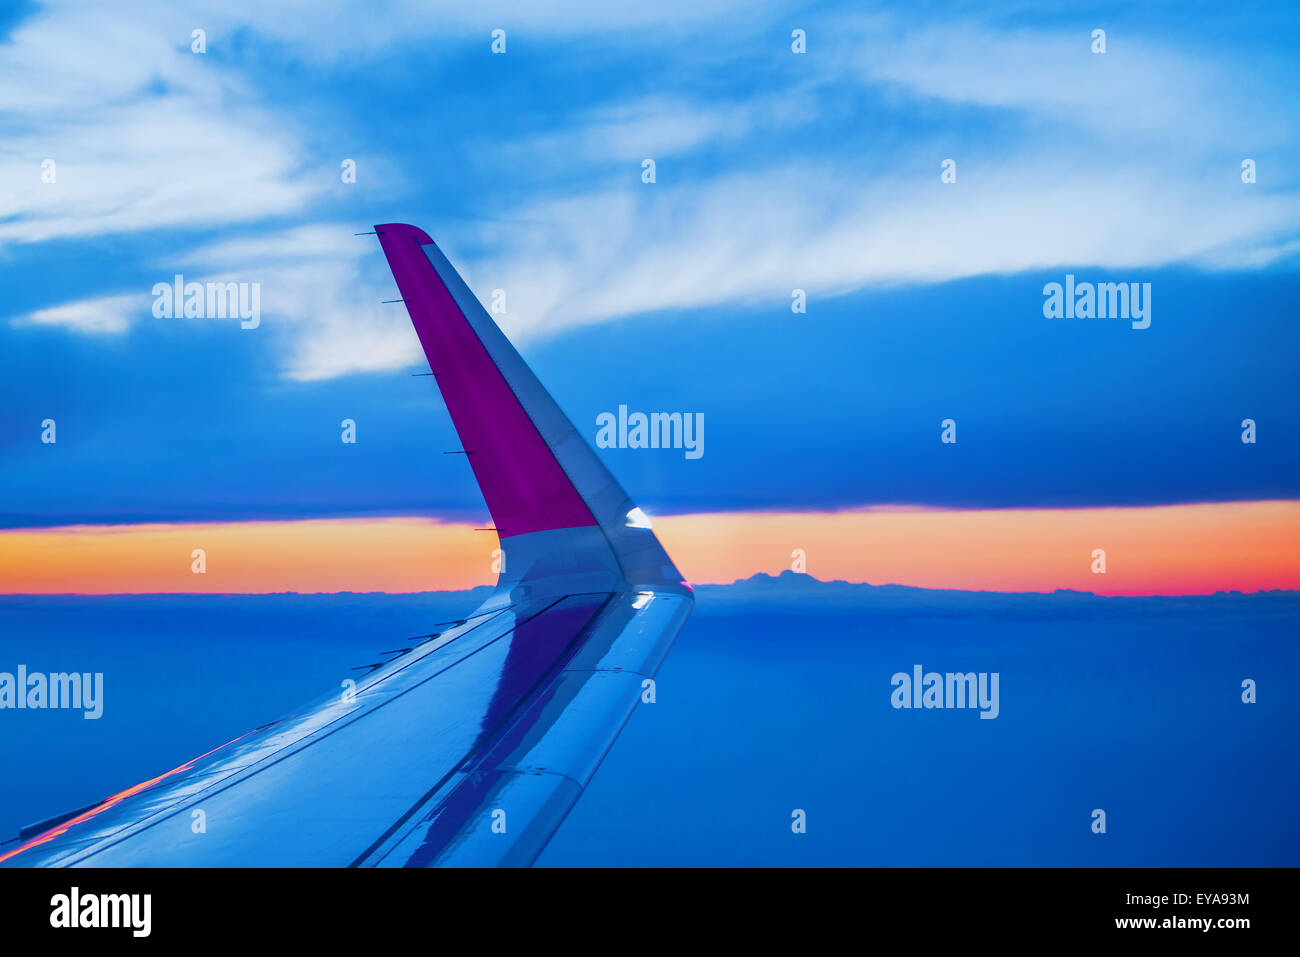 Flugzeugflügel während des Fluges von kommerziellen Passagierflugzeugen, Sonnenuntergang am Horizont durch offene Bullauge Fenster gesehen Stockfoto